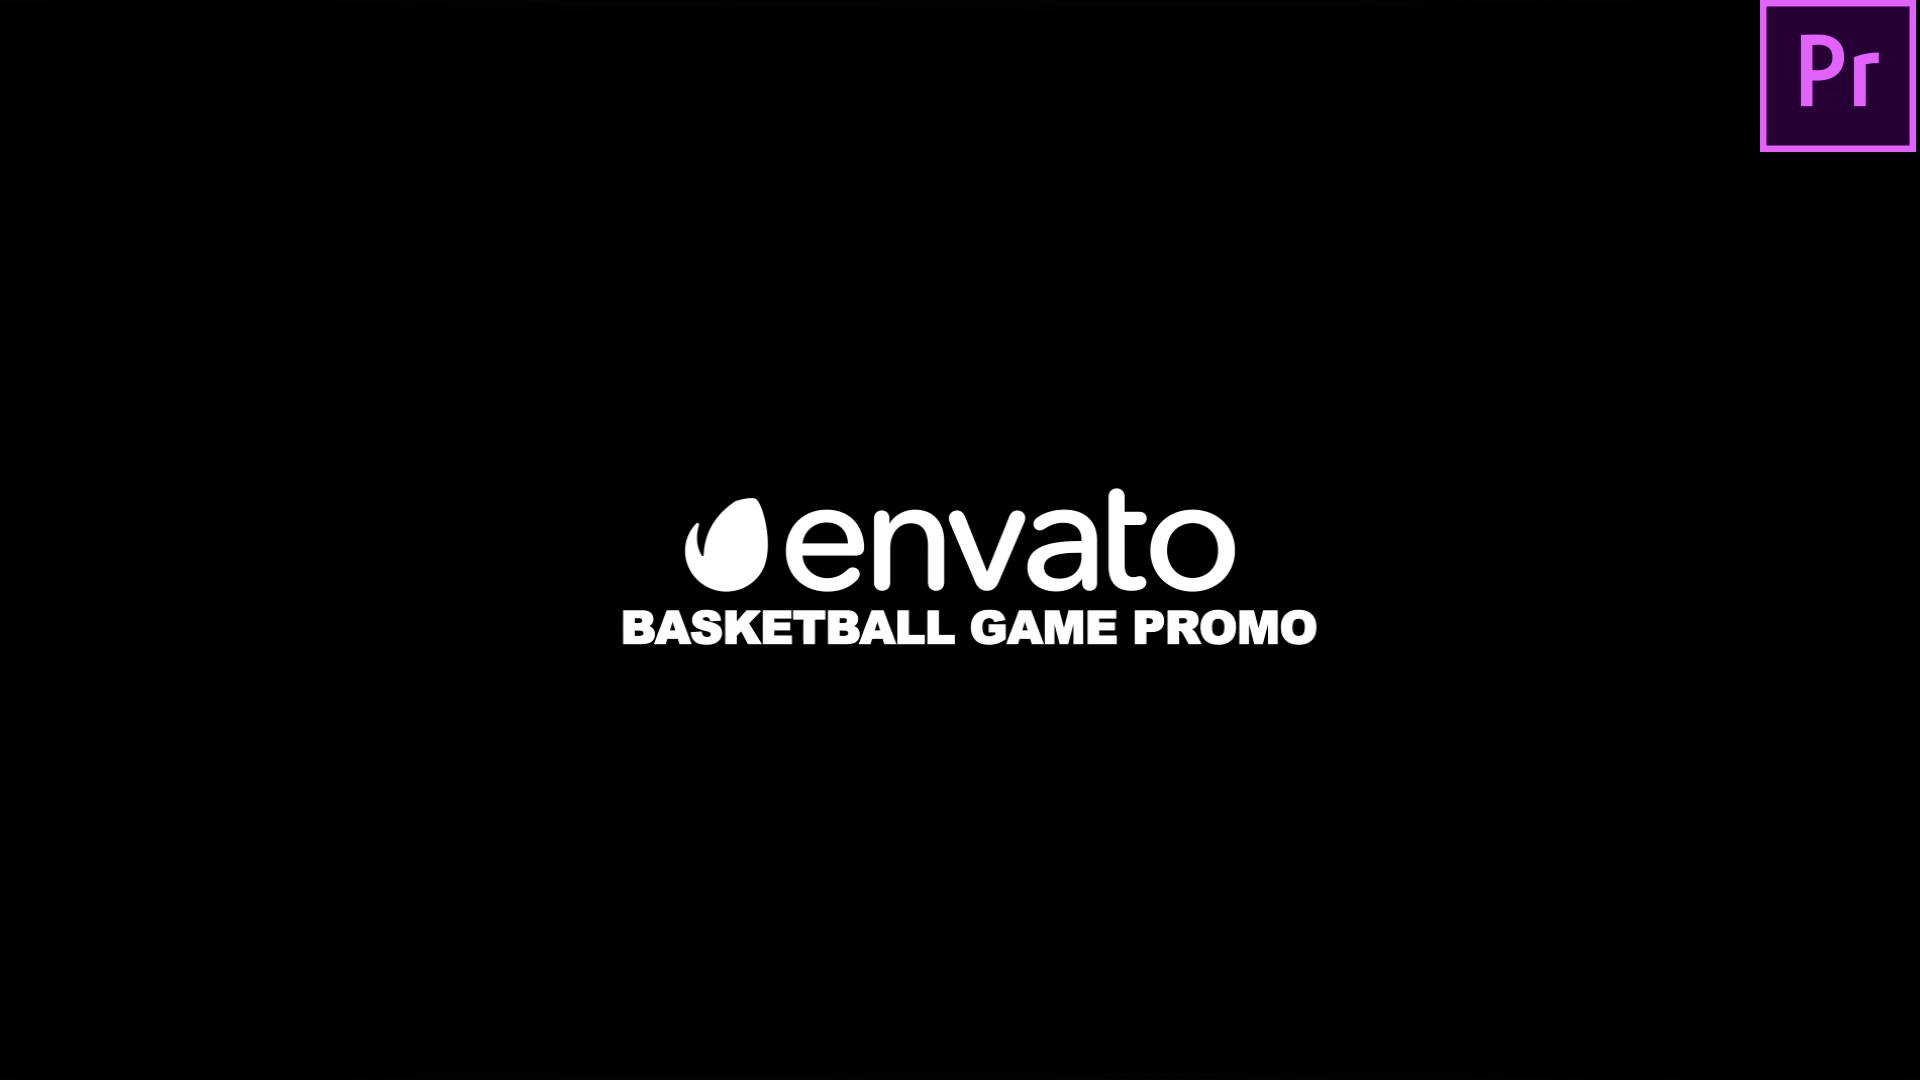 Basketball Game Promo Basketball Intro Premiere Pro Videohive 34205080 Premiere Pro Image 11